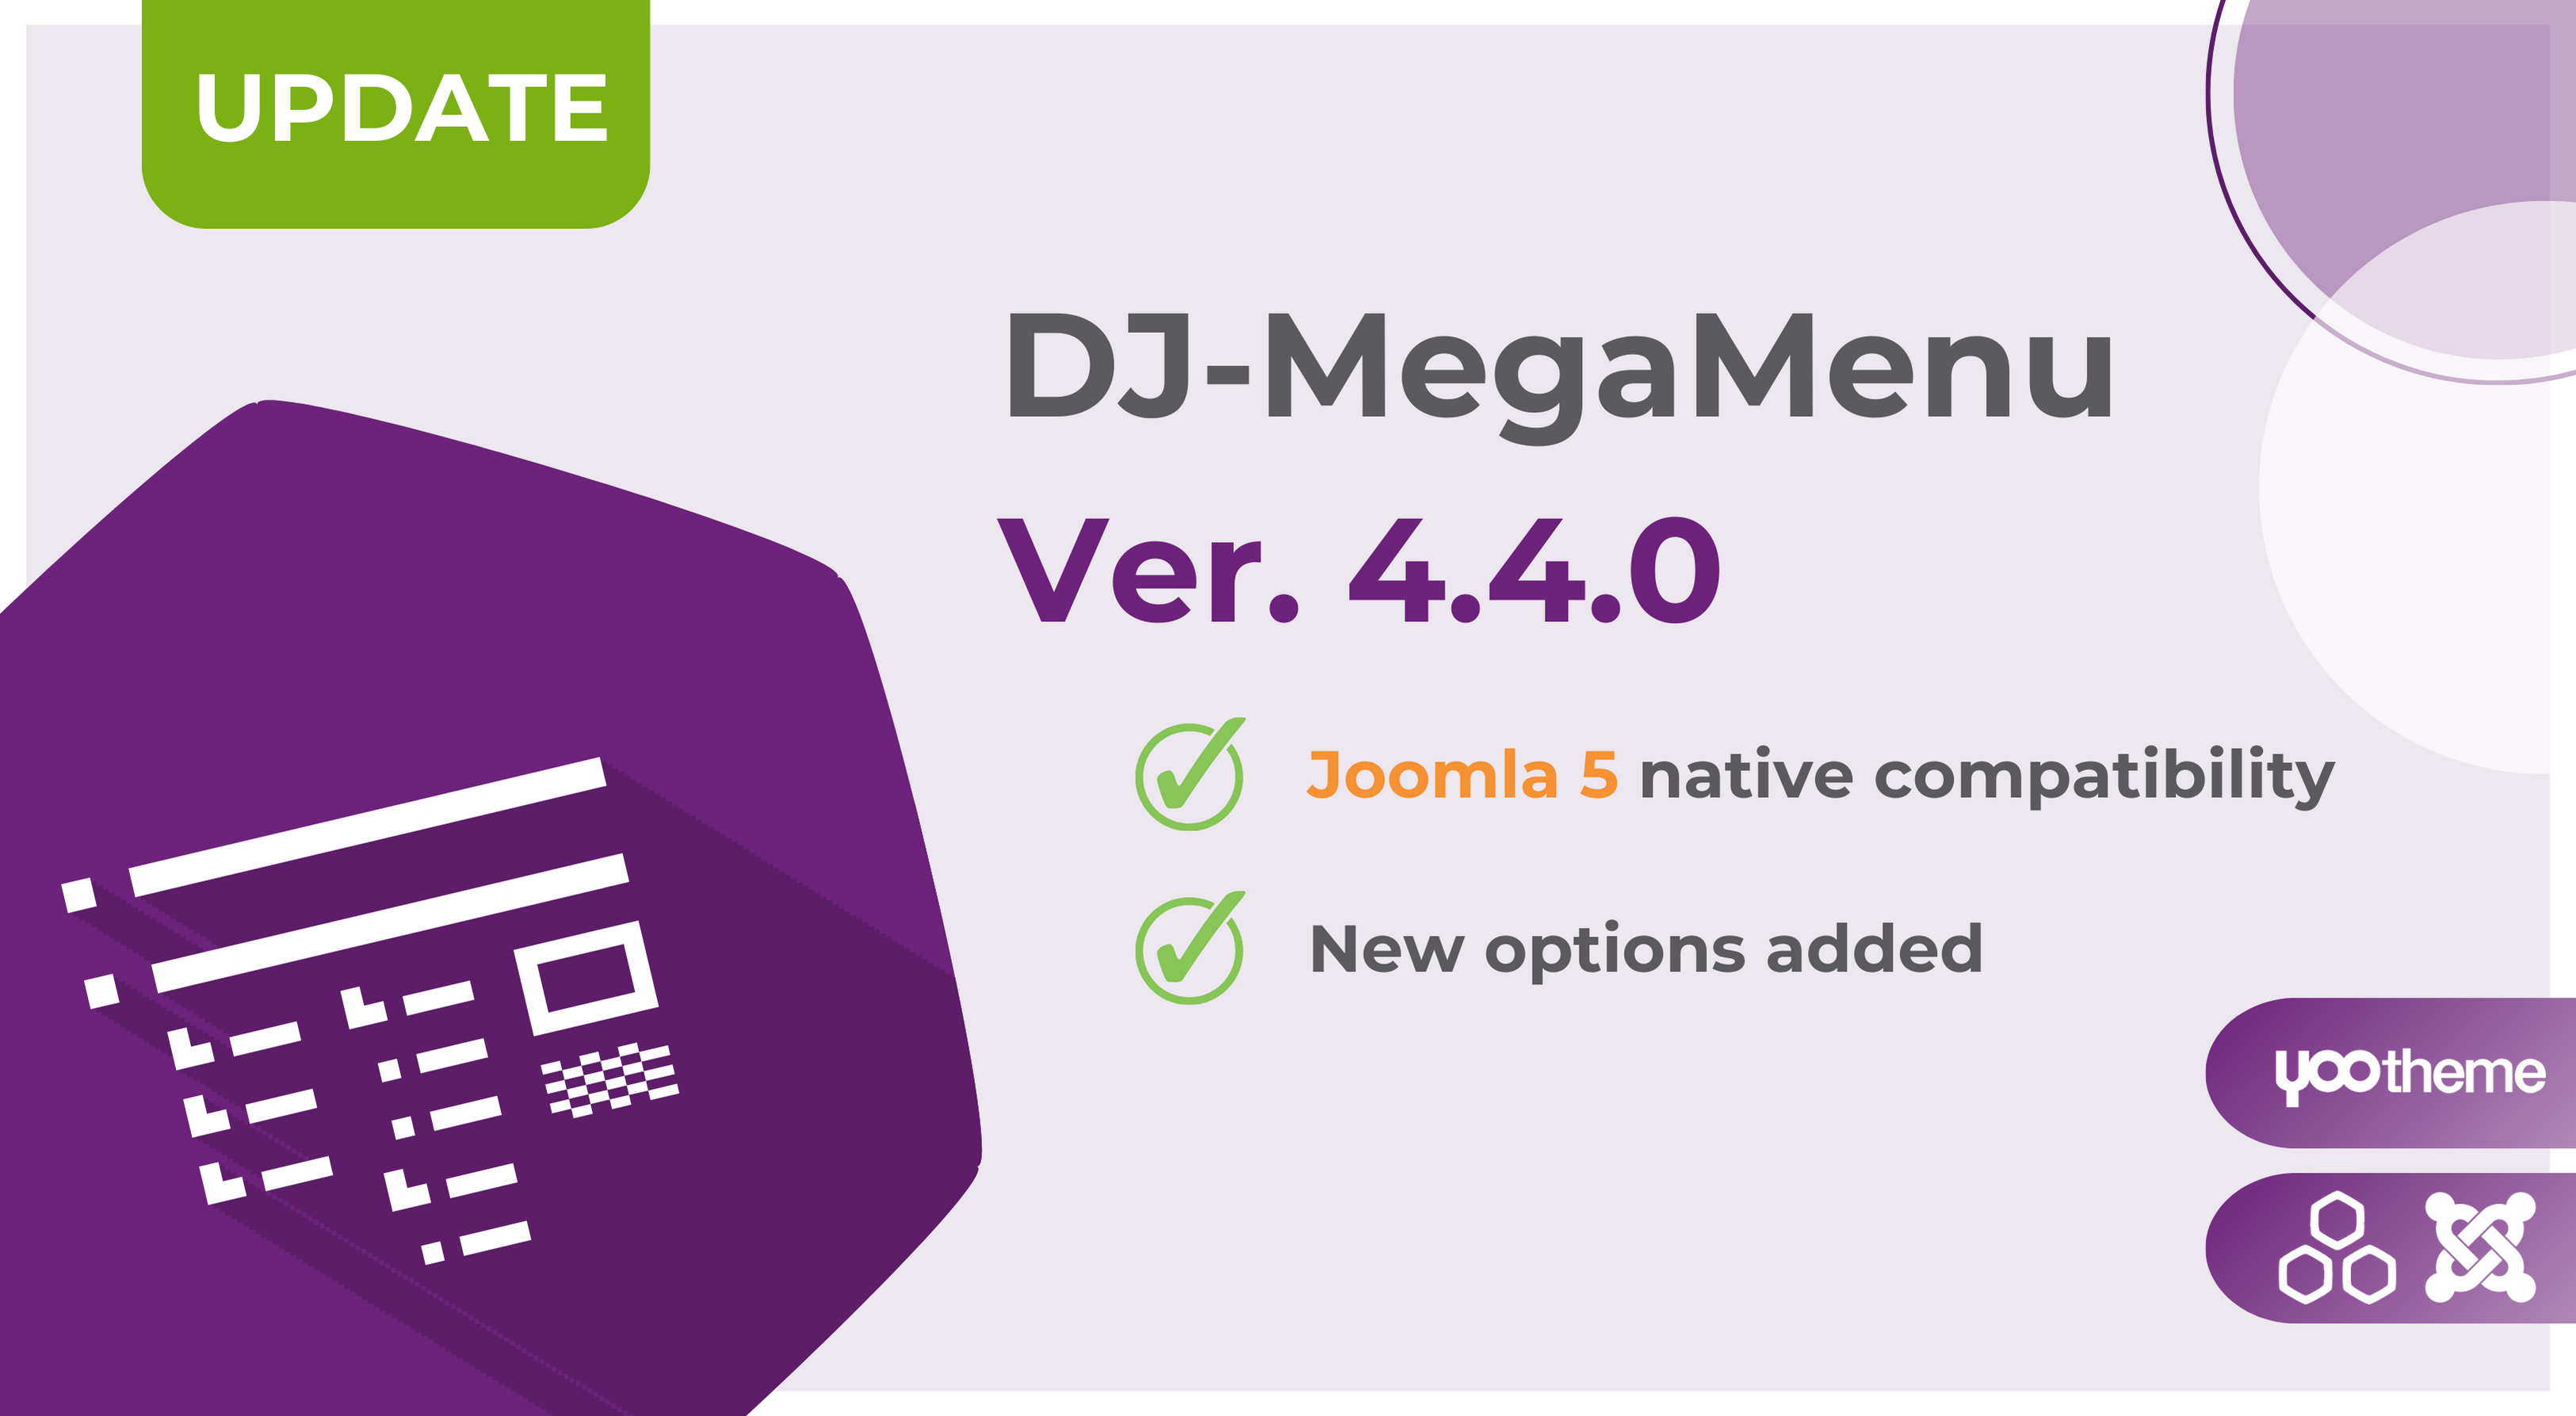 DJ-MegaMenu version 4.4.0